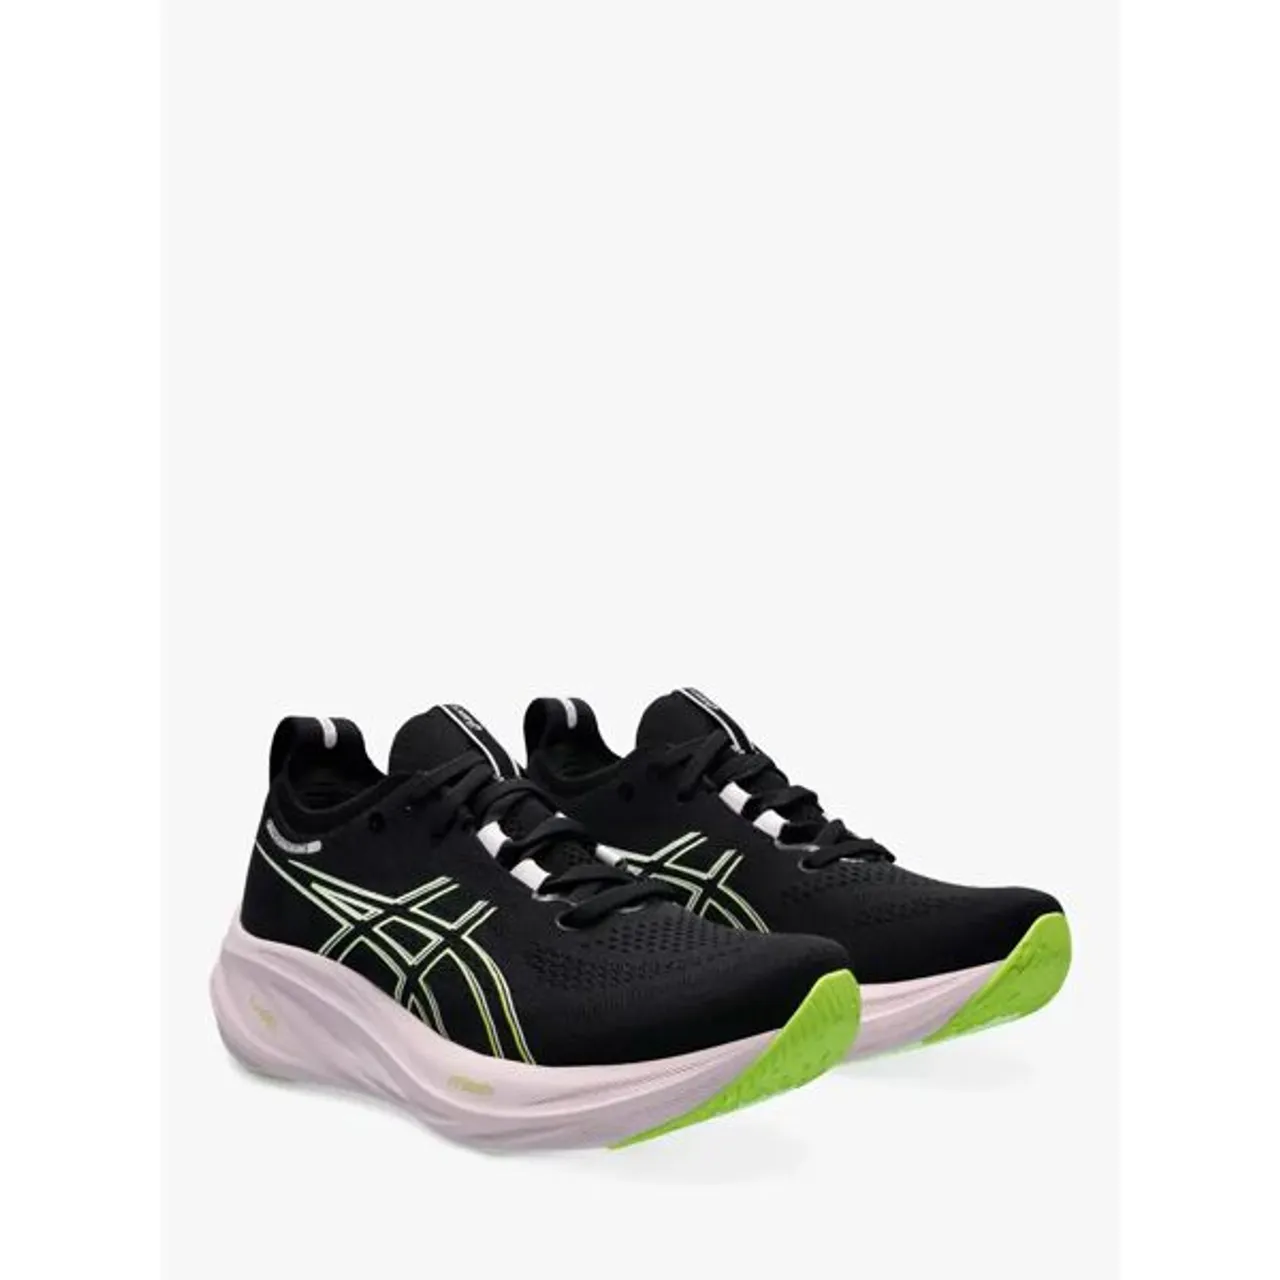 ASICS GEL-NIMBUS 26 Women's Running Shoes - Black/Neon Lime - Female